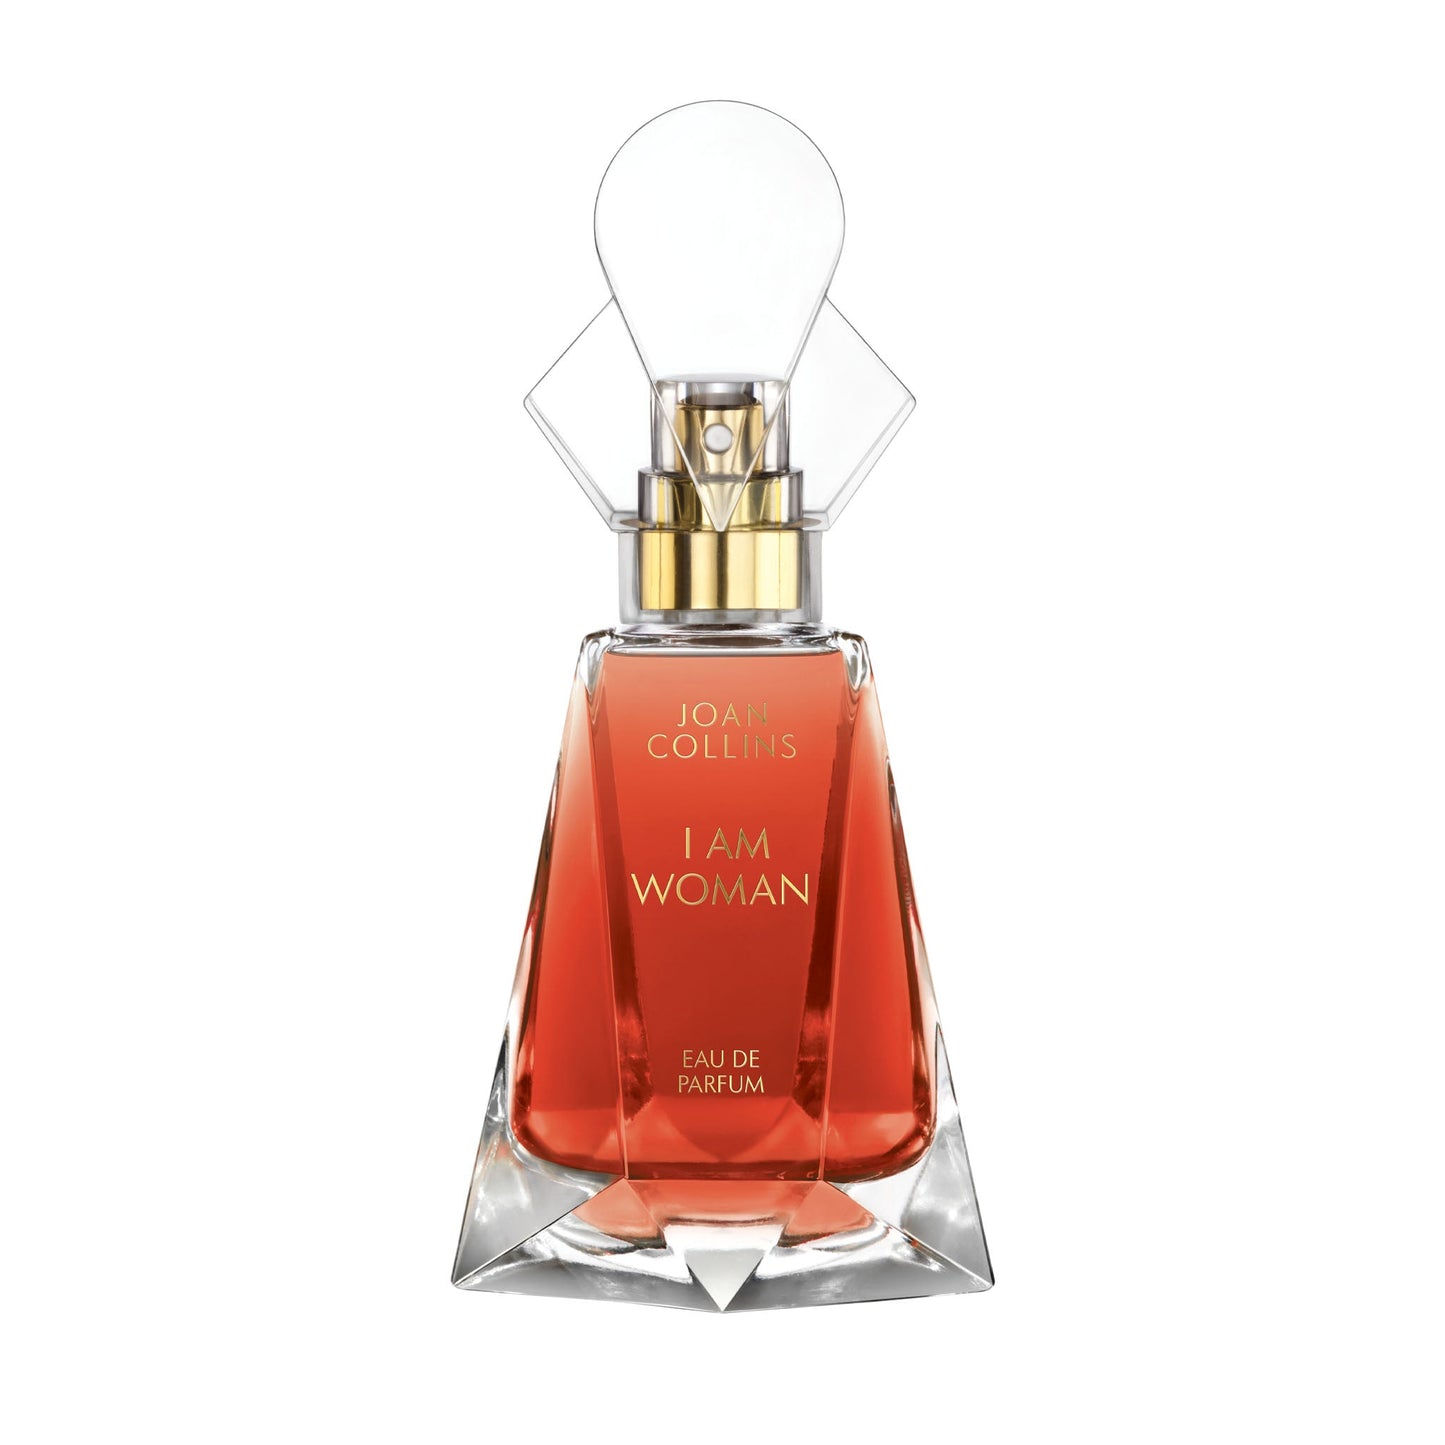 I AM WOMAN - Eau de Parfum 50ml